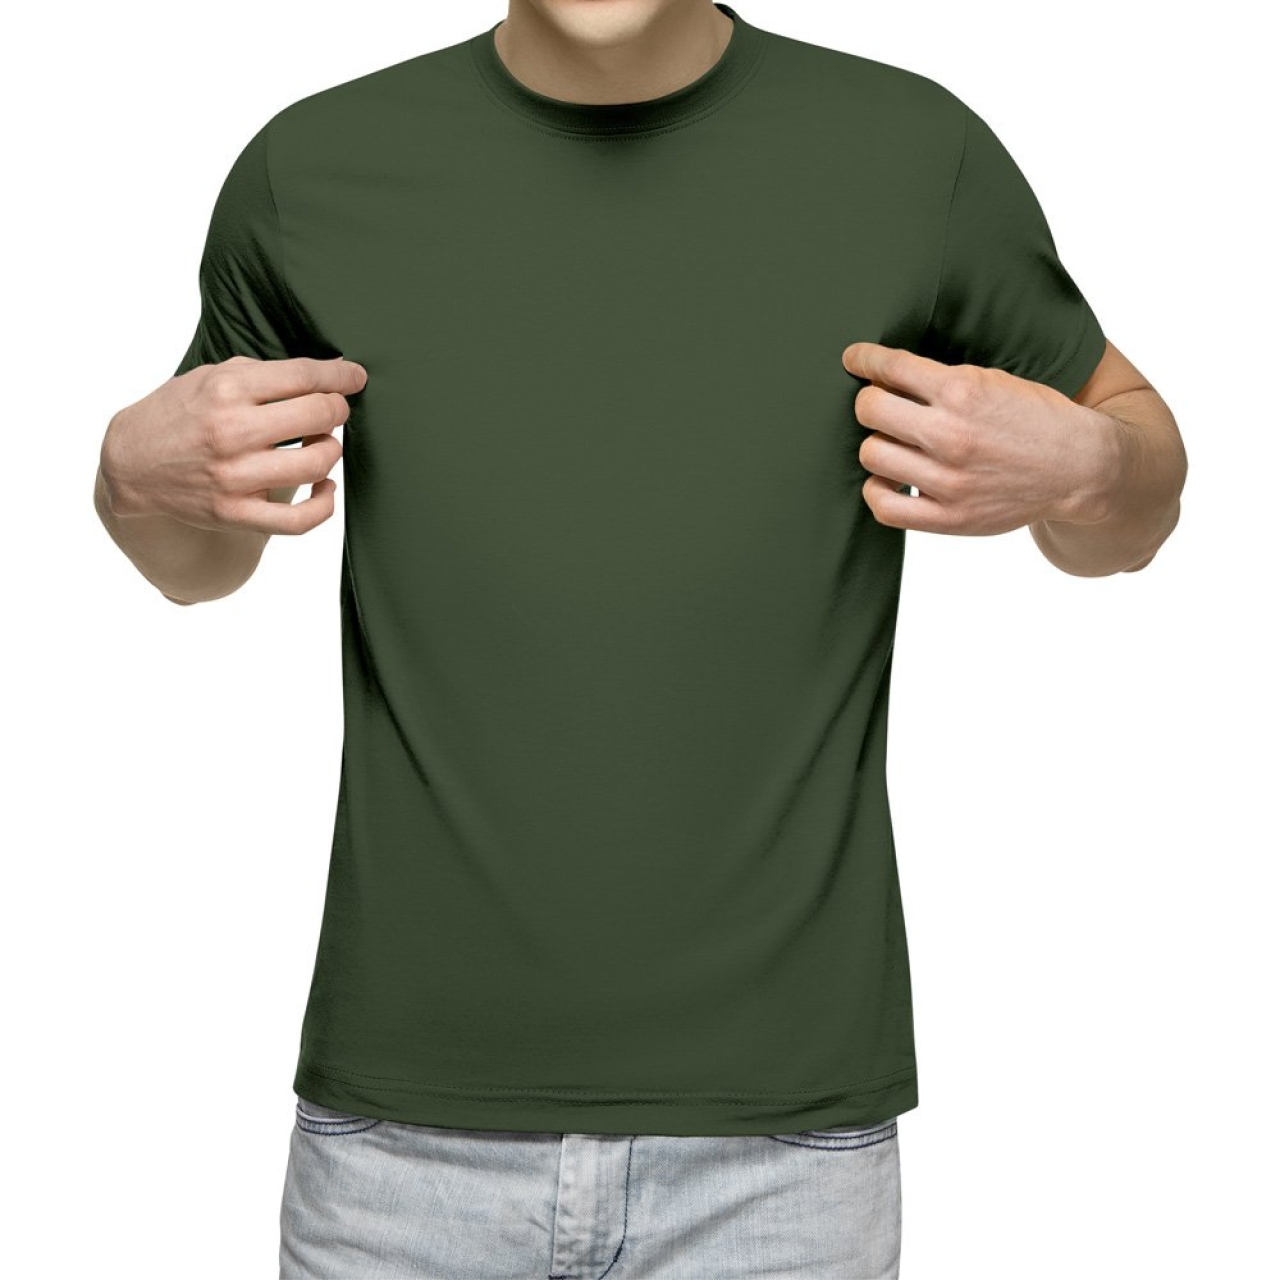 تیشرت آستین کوتاه مردانه کد 1ZGR رنگ سبز ارتشی